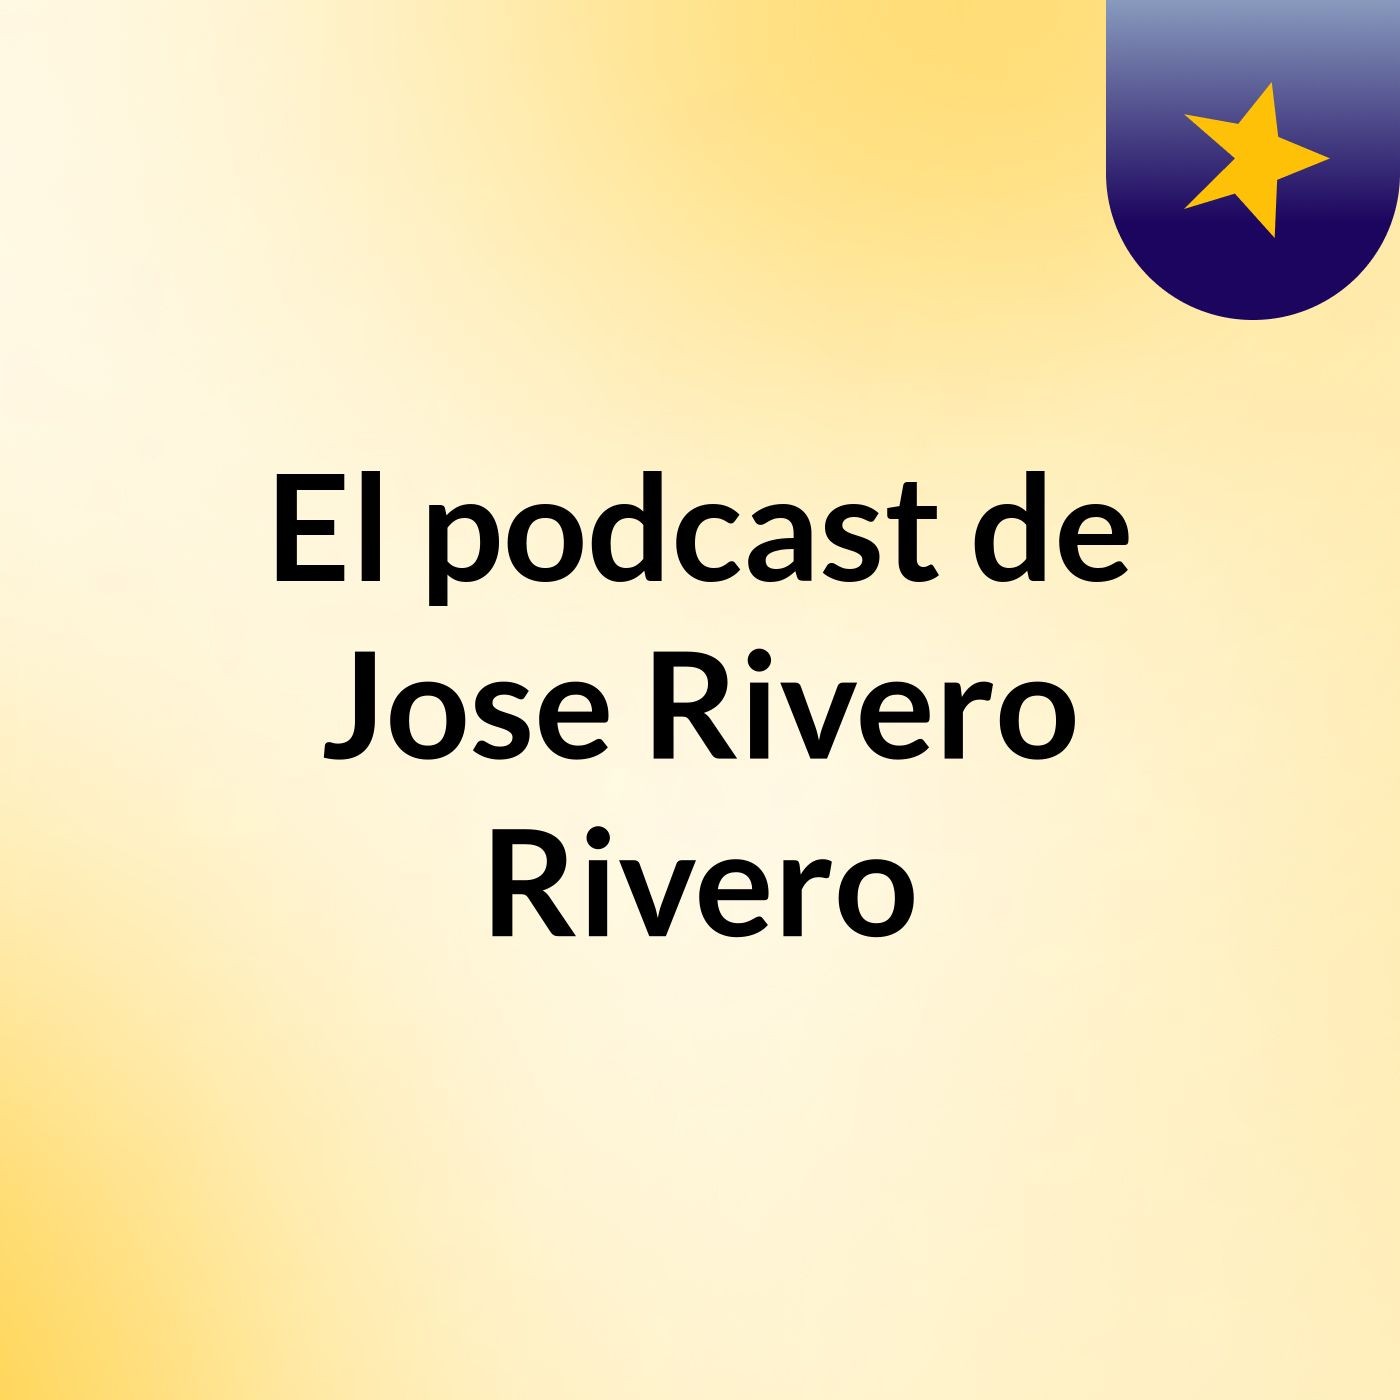 El podcast de Jose Rivero Rivero